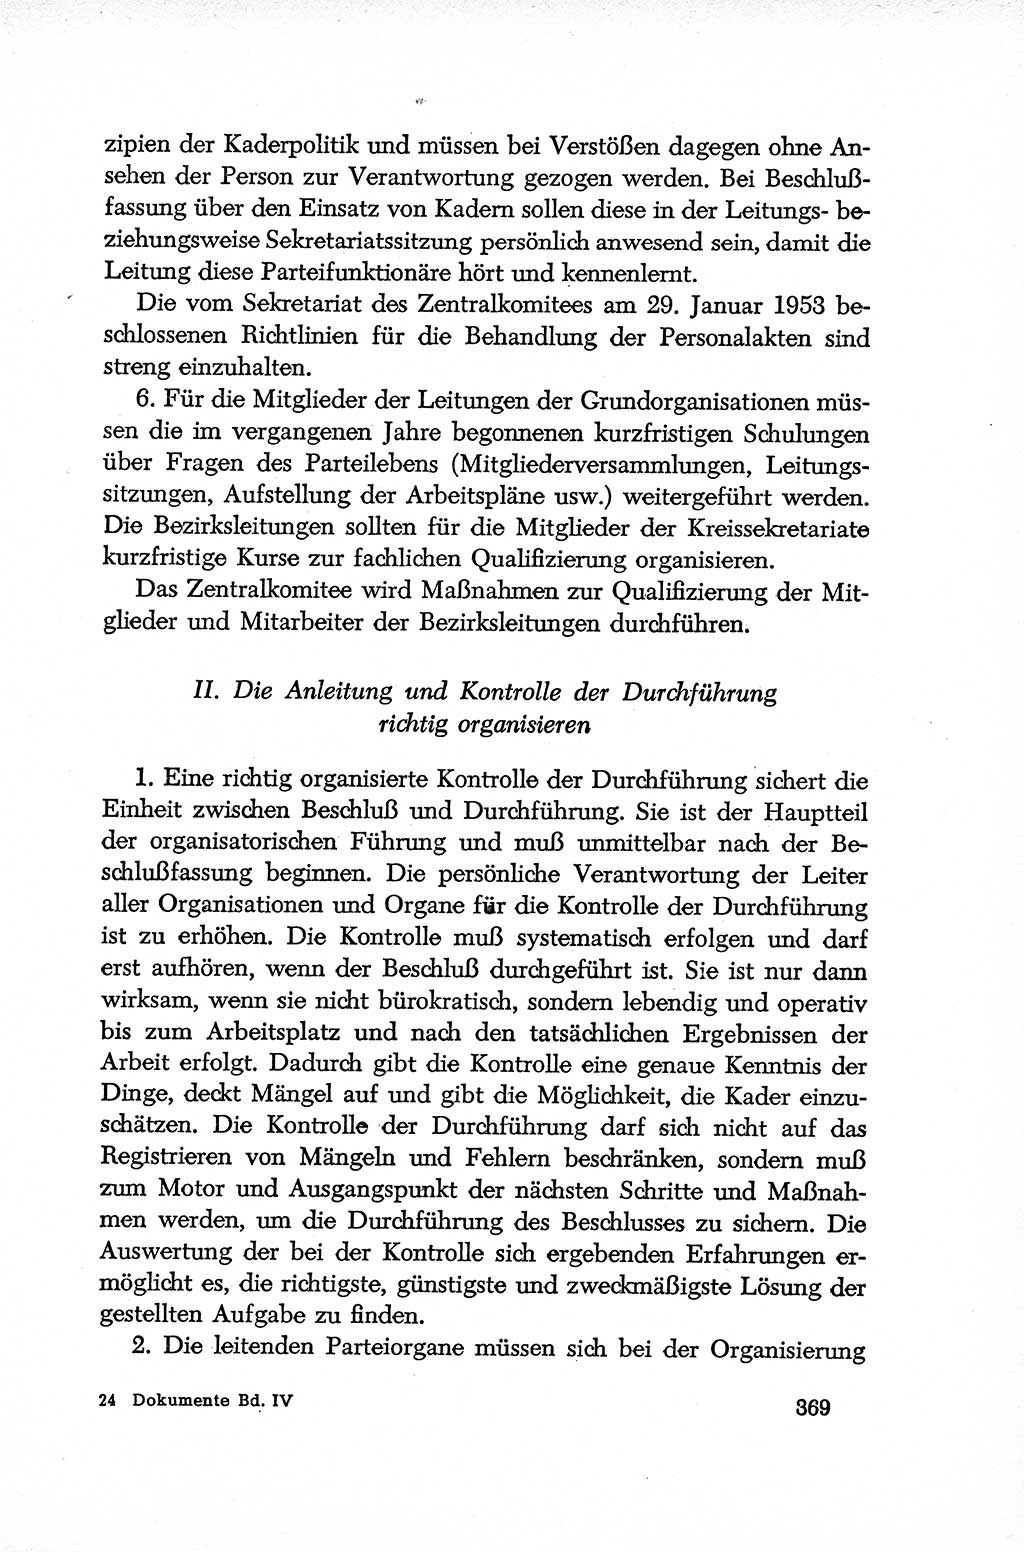 Dokumente der Sozialistischen Einheitspartei Deutschlands (SED) [Deutsche Demokratische Republik (DDR)] 1952-1953, Seite 369 (Dok. SED DDR 1952-1953, S. 369)